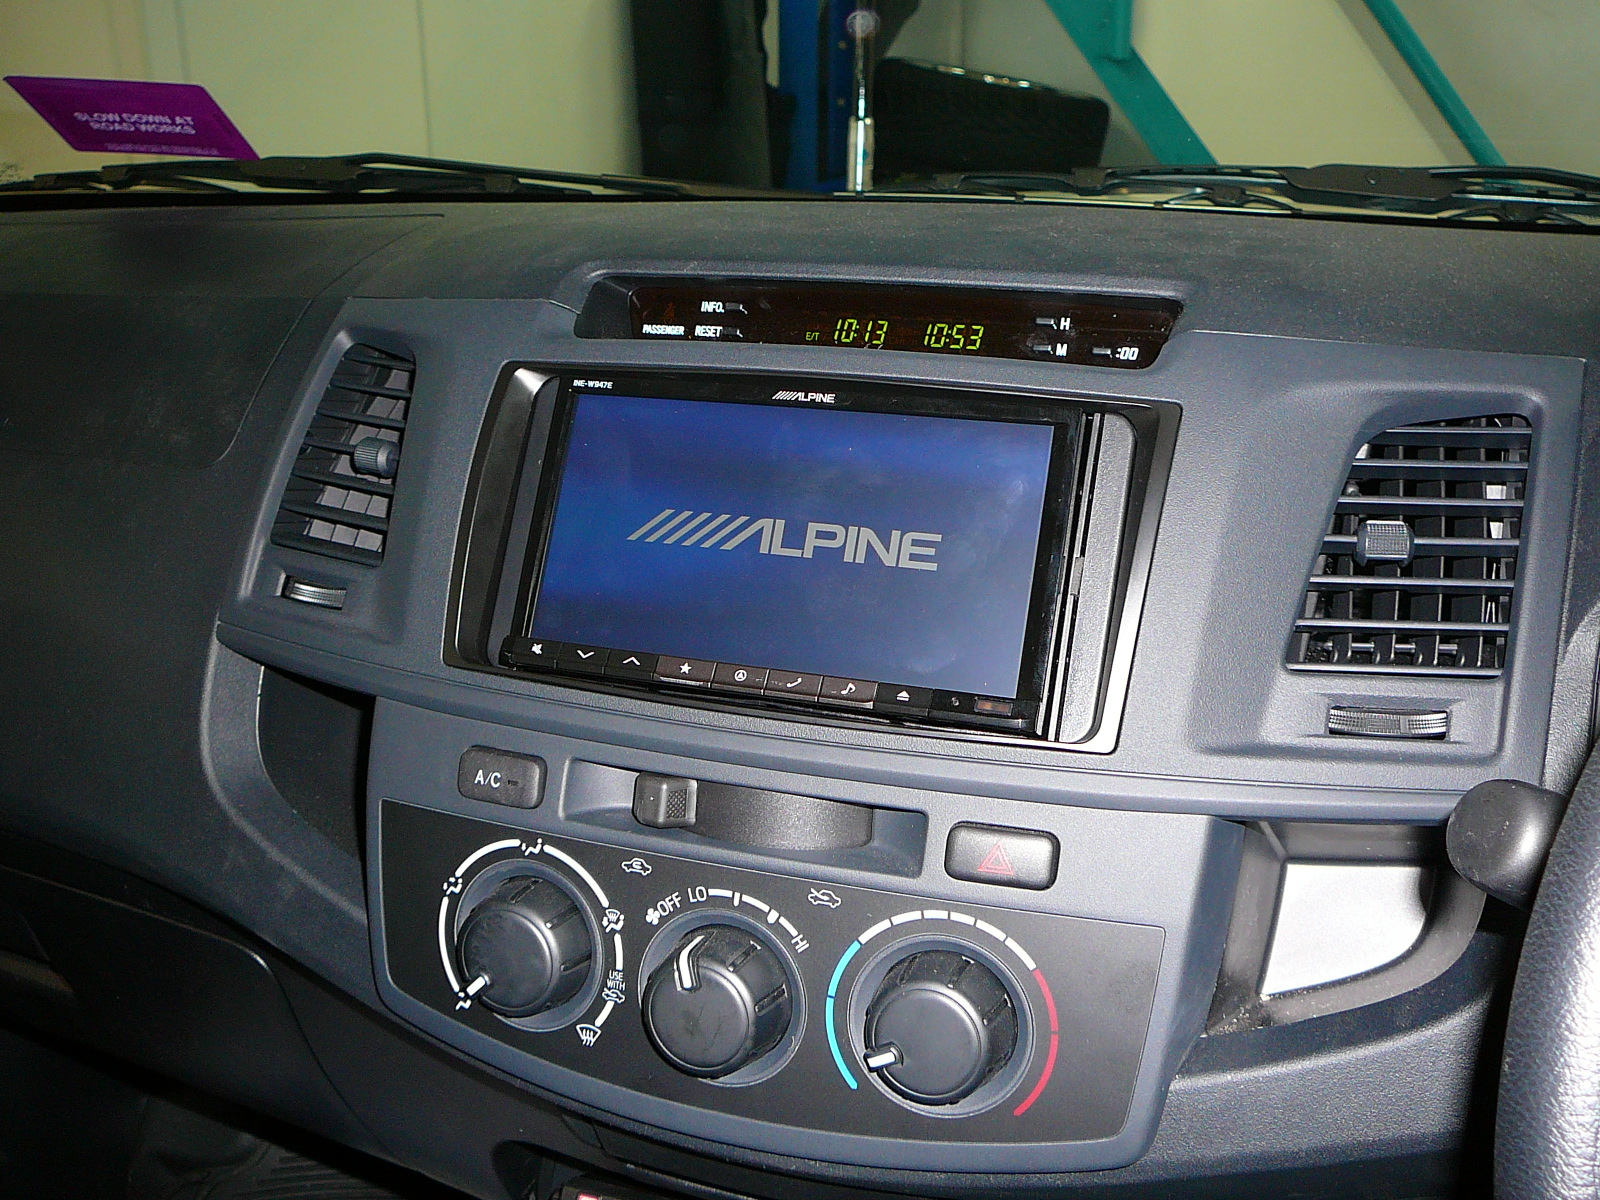 Toyota Hilux 2014, Alpine INE-W947 GPS Navigation with a GME-TX 3520S UHF CB Radio